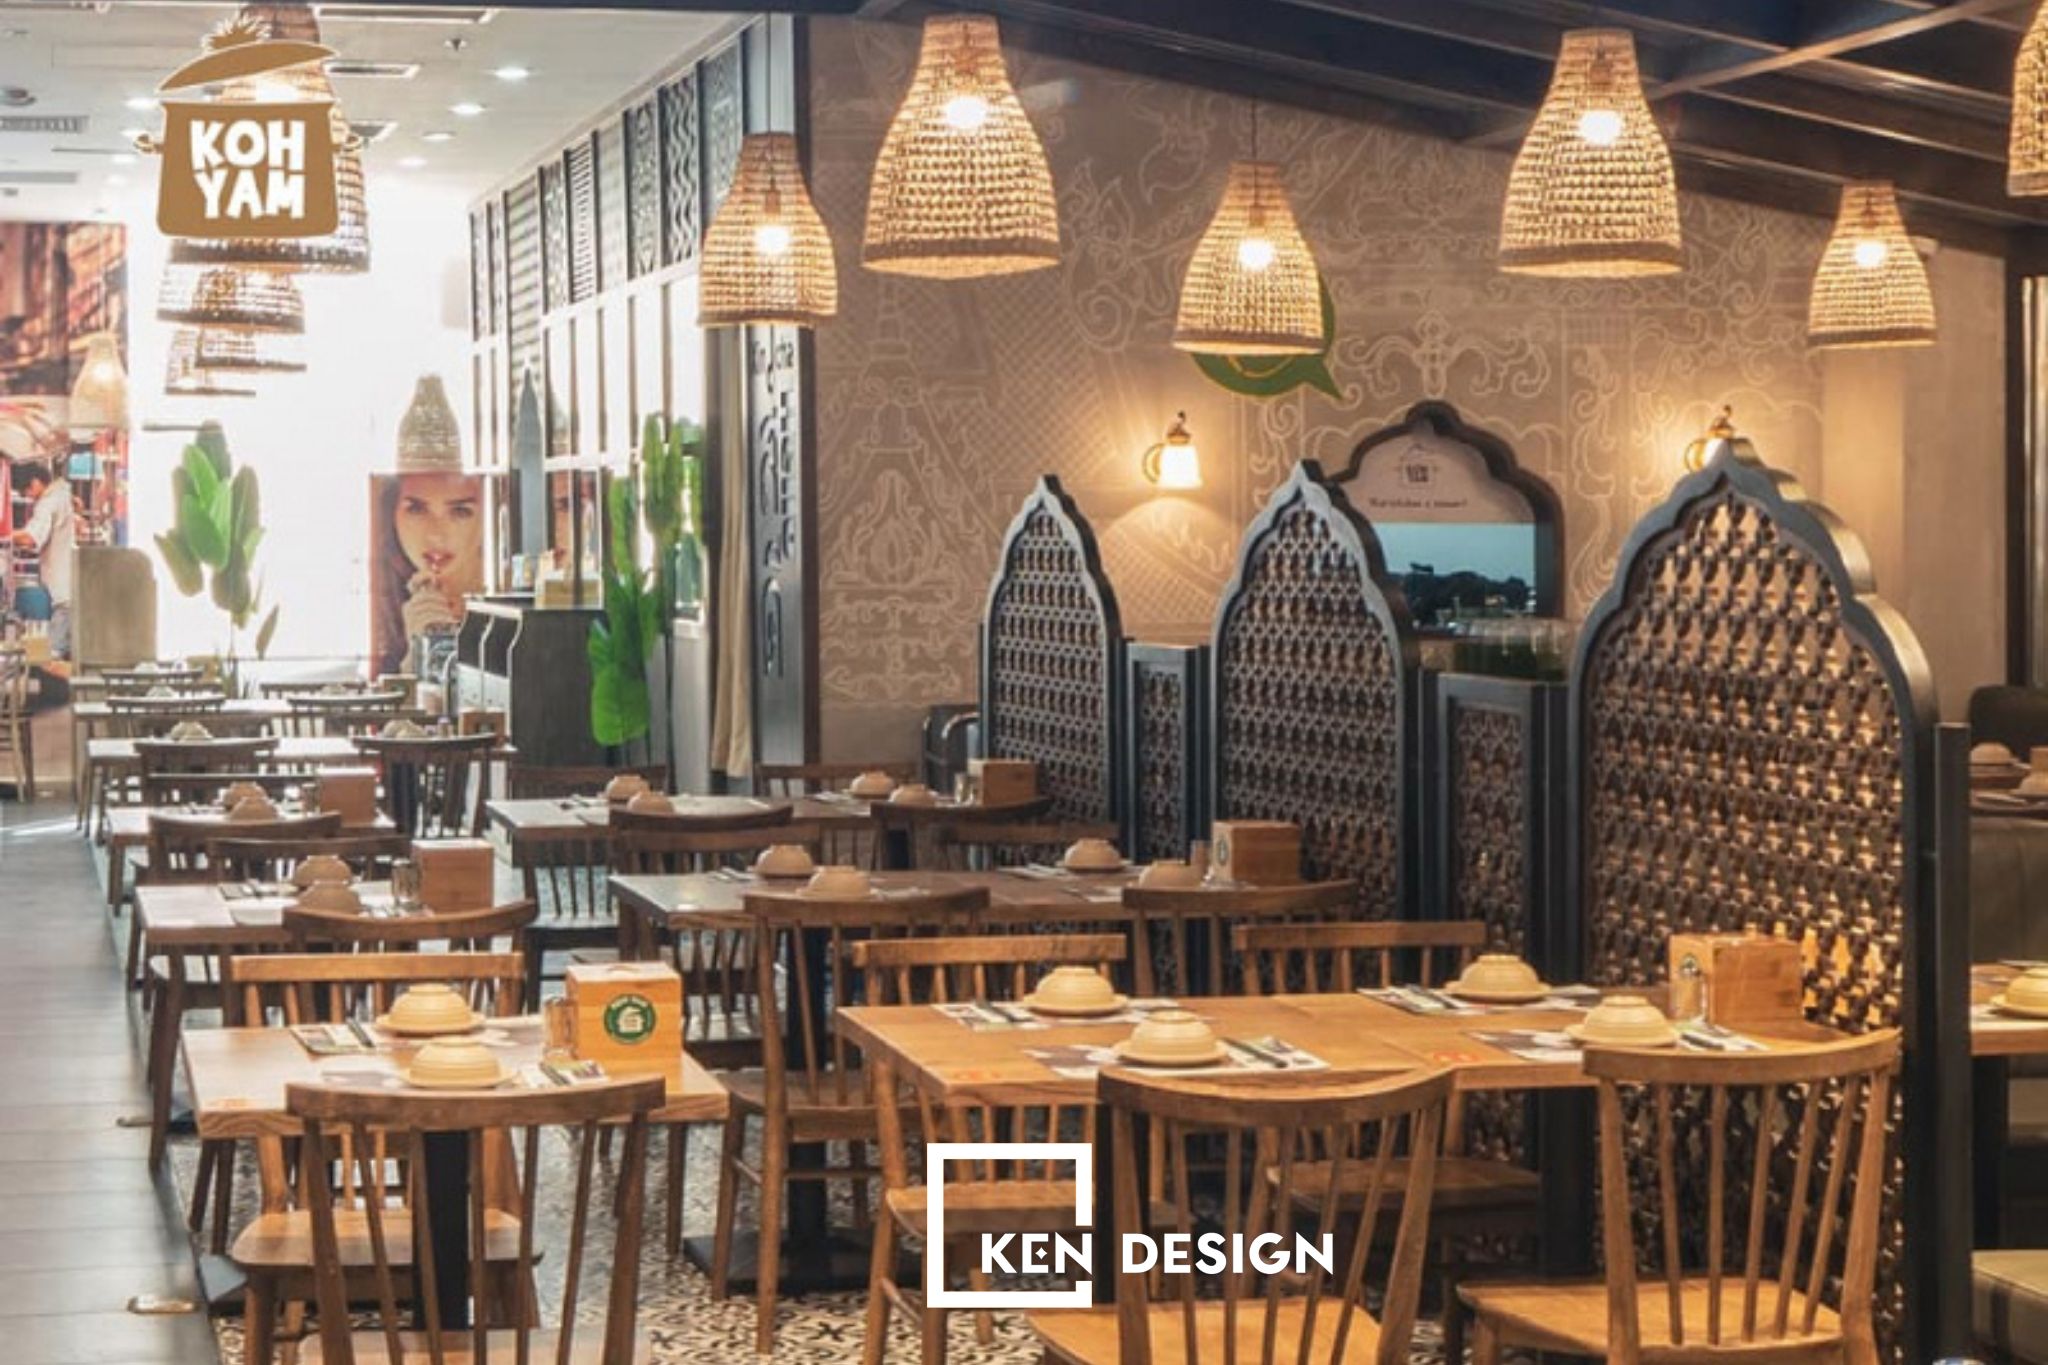 Thiết kế nhà hàng Thái KOH